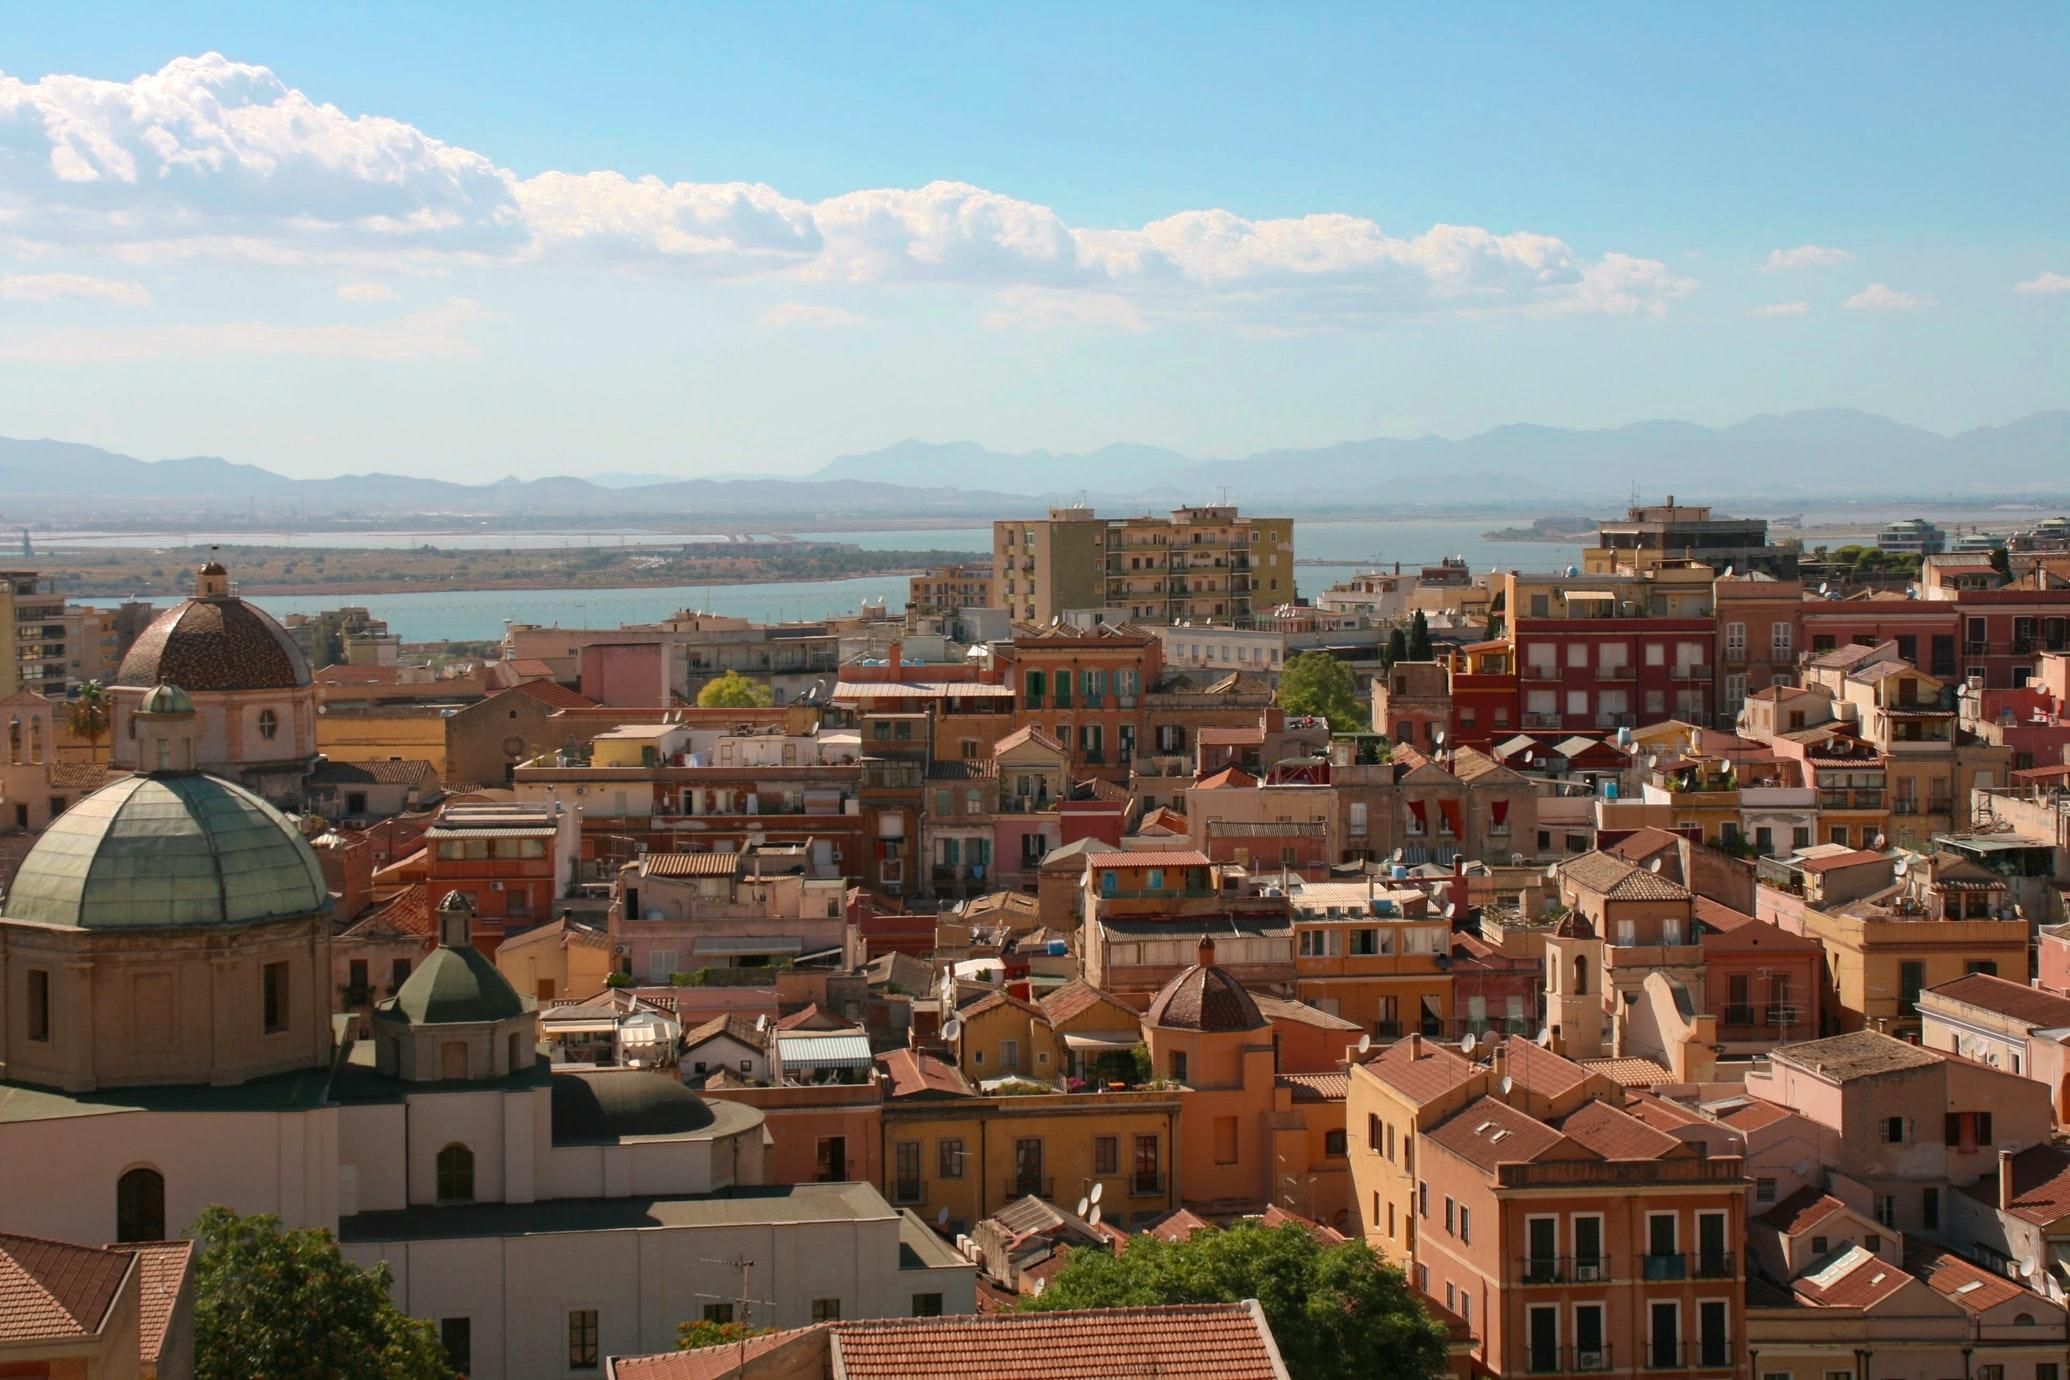 Аренда жилья за 1 евро: на Сардинии анонсировали новую программу - Недвижимость